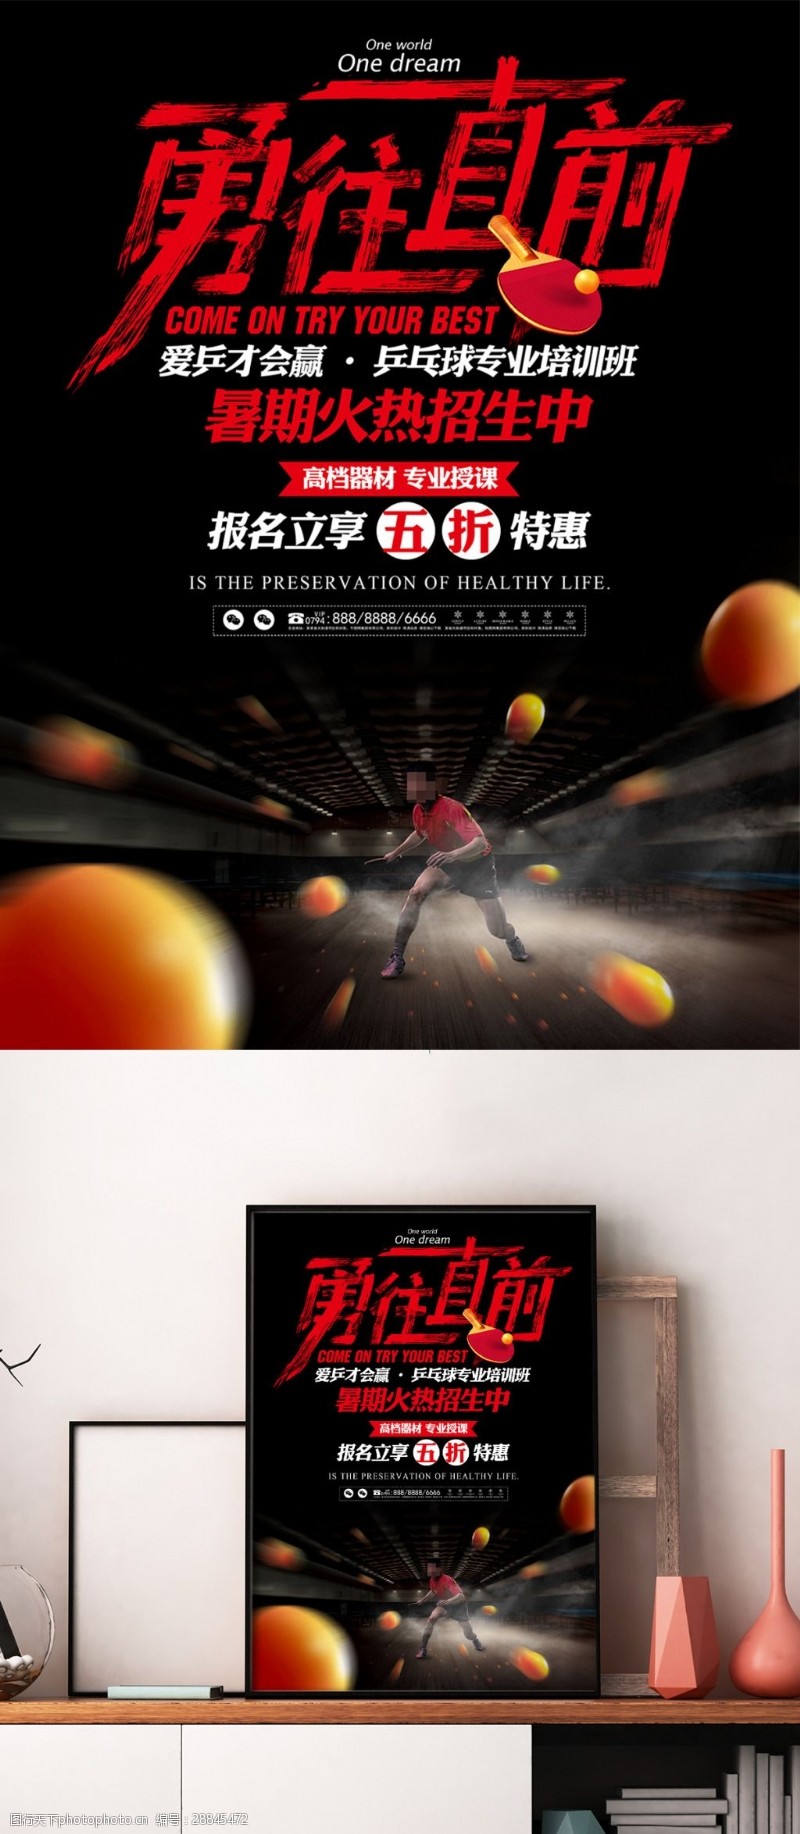 乒乓球培训班体育竞技类促销海报